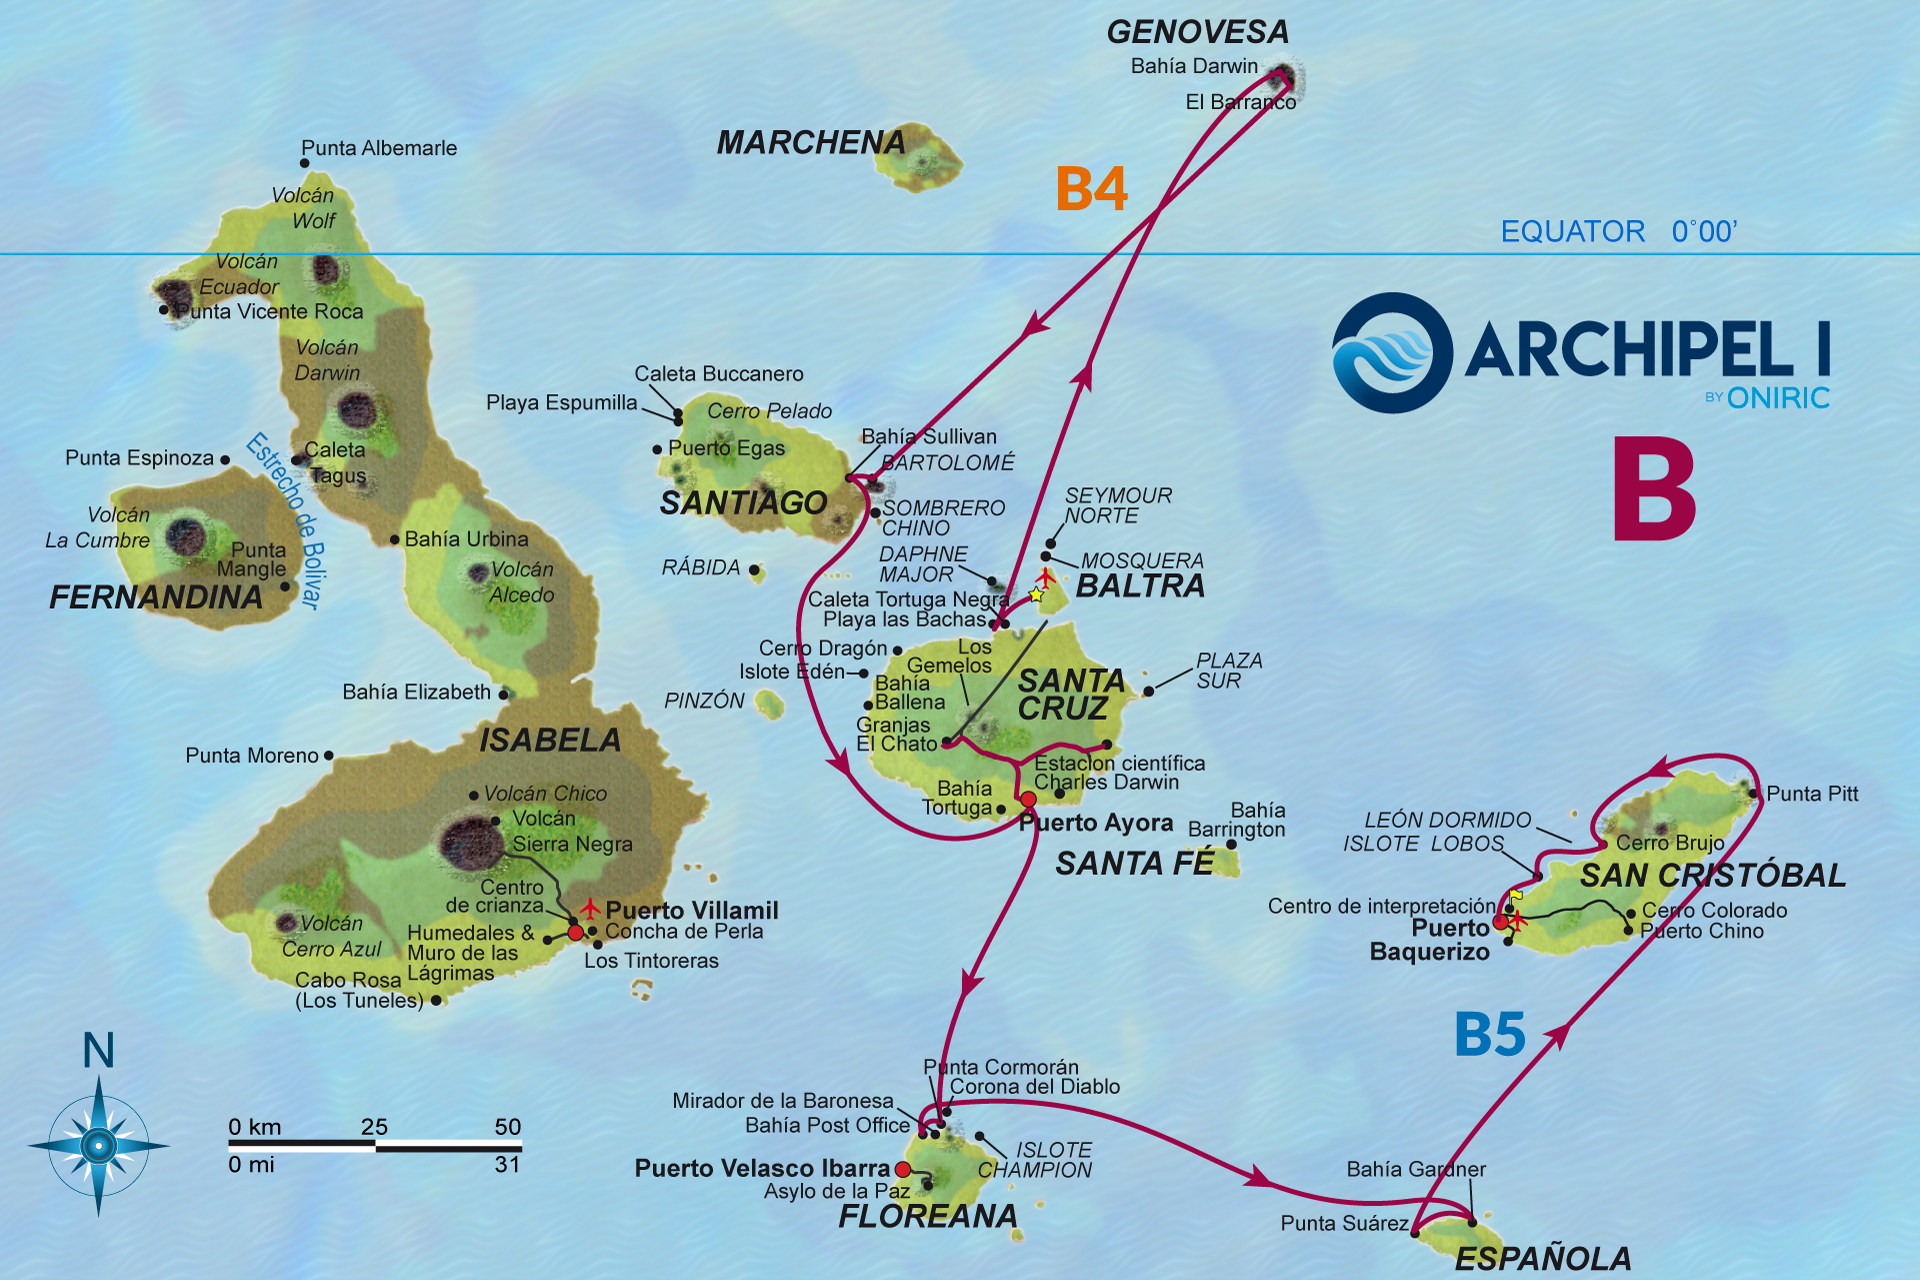 galapagos-mapa-archipel-1-B-oniric